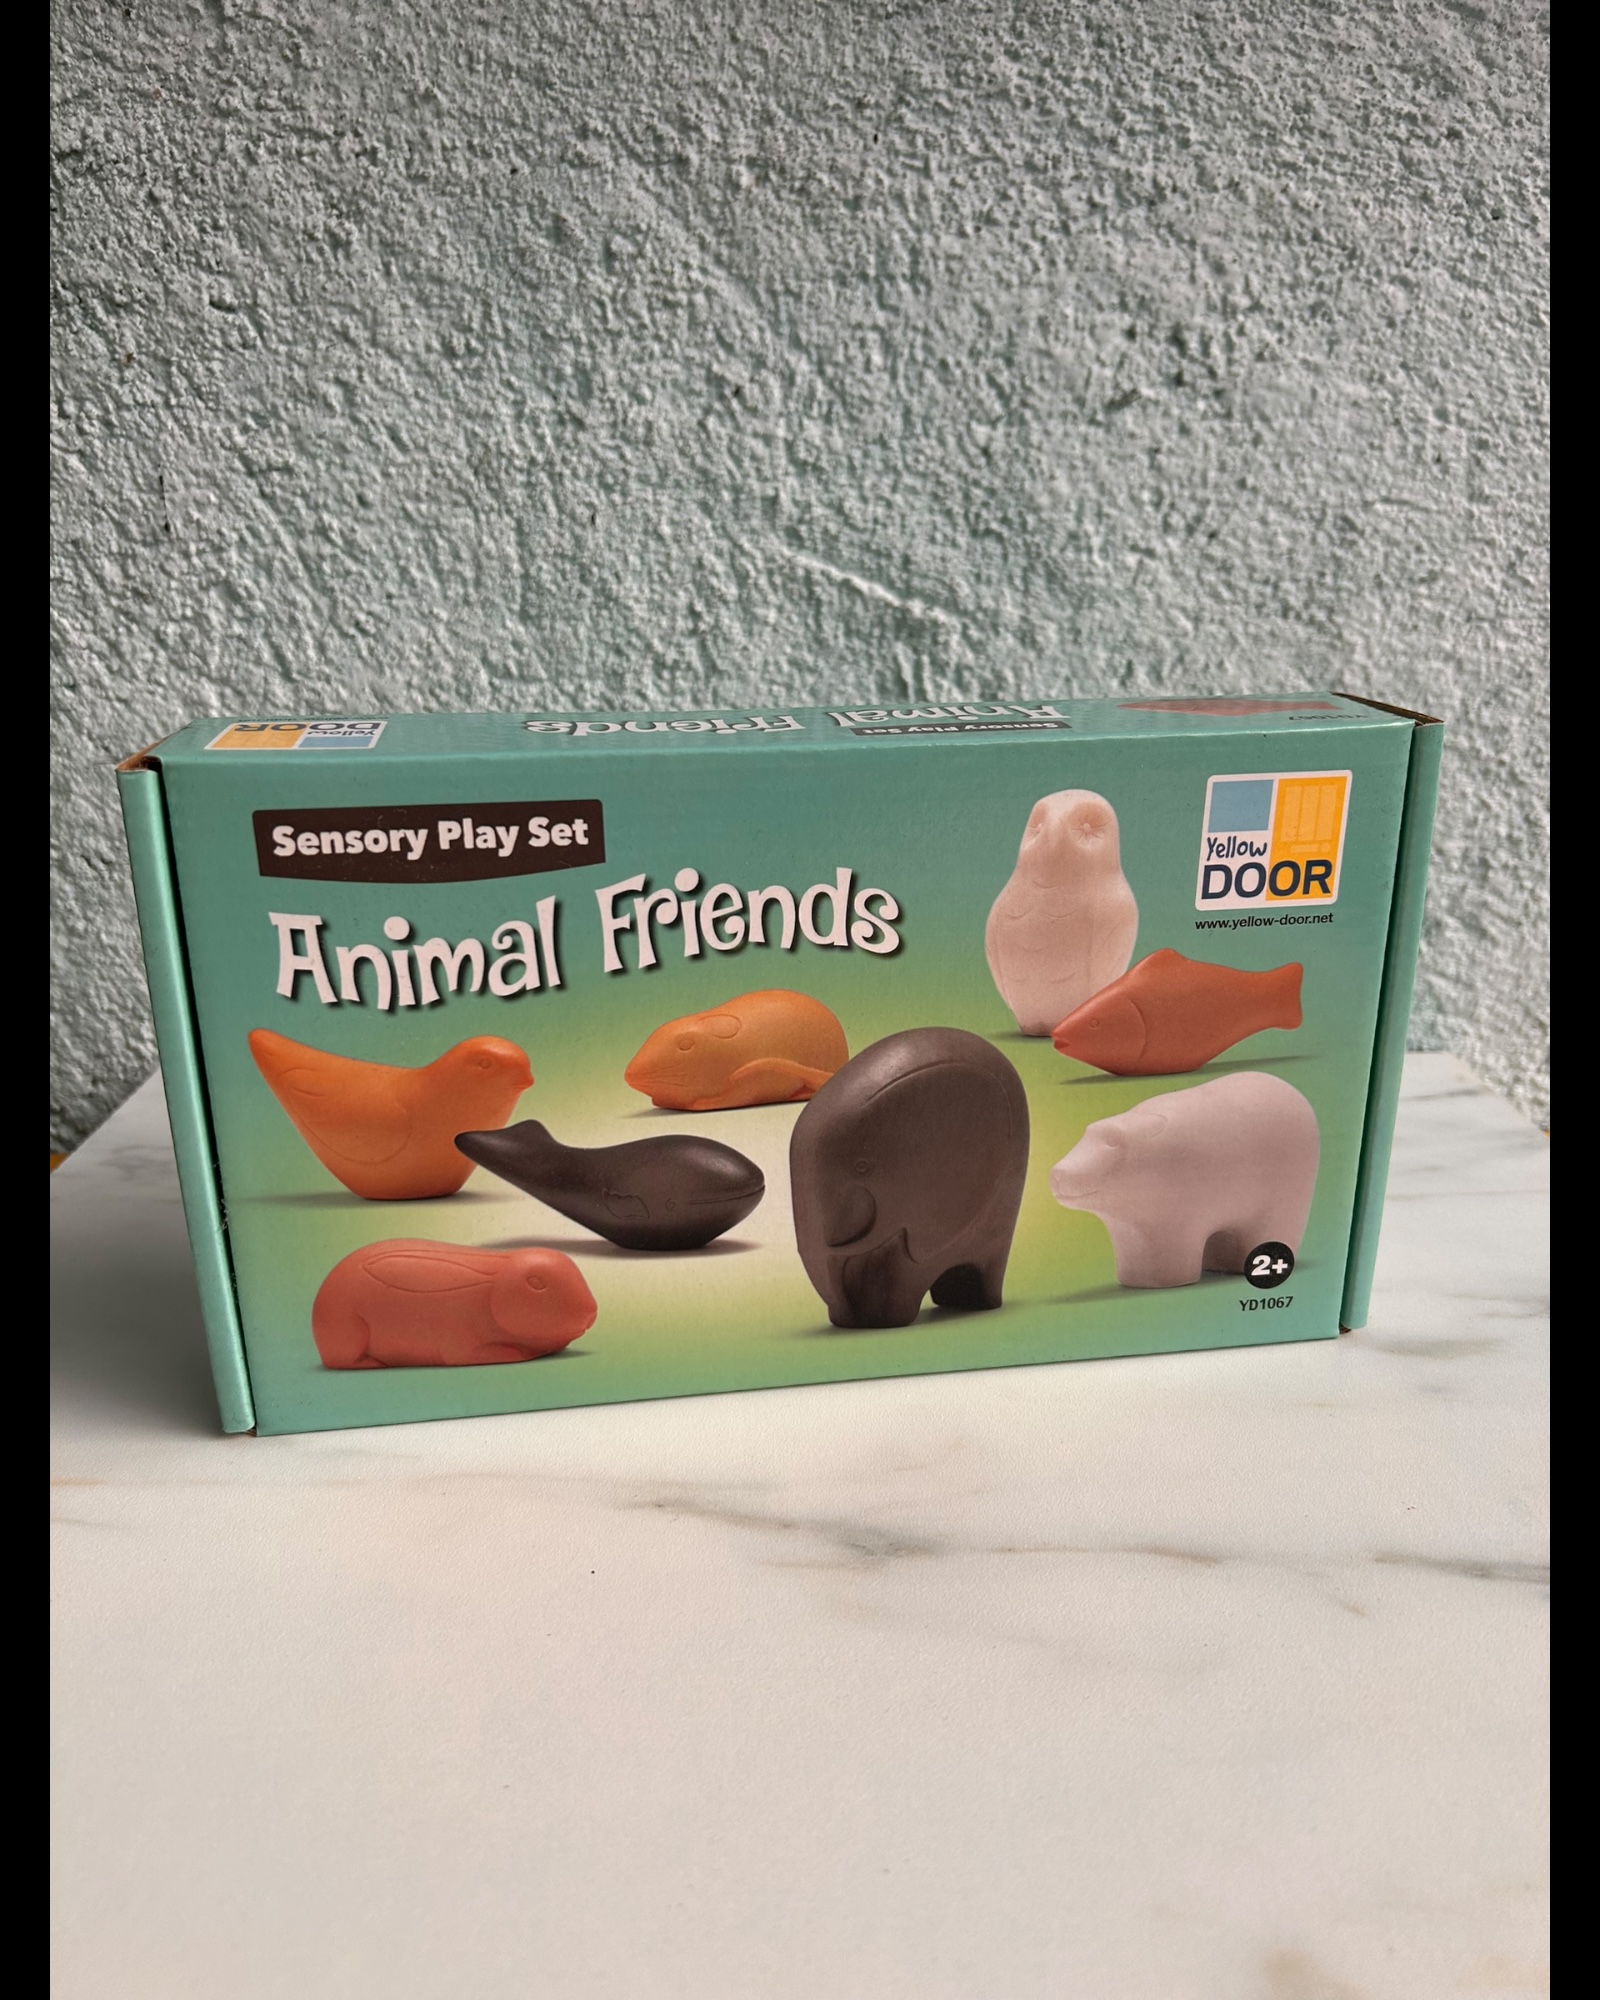 ANIMAL-FRIENDS-YELLOW-DOOR-1